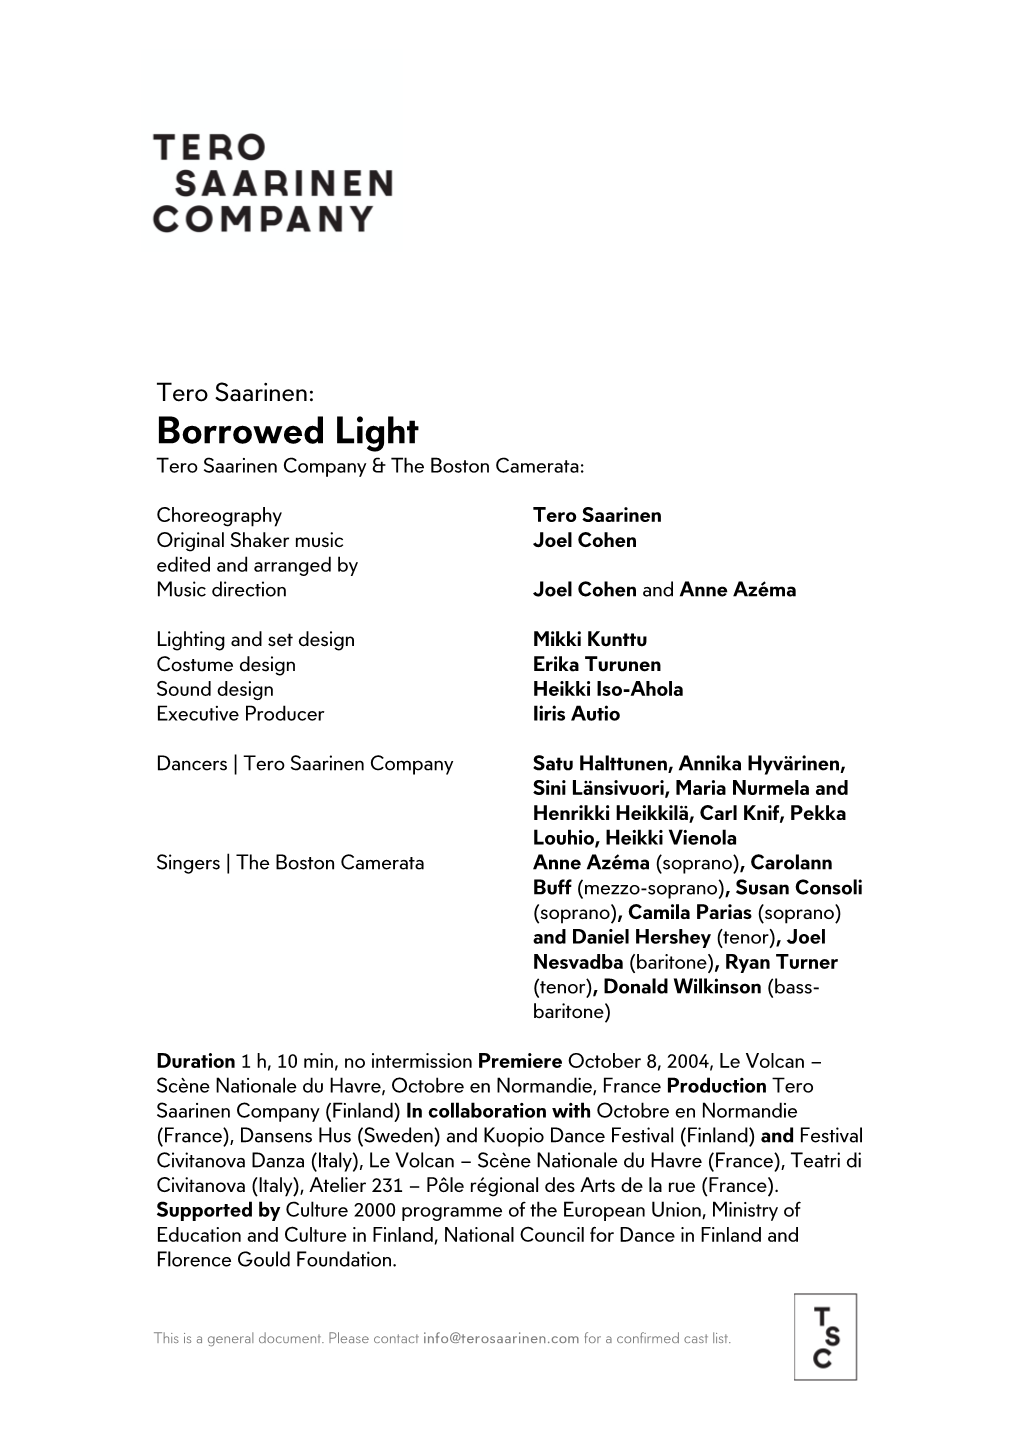 Borrowed Light Tero Saarinen Company & the Boston Camerata